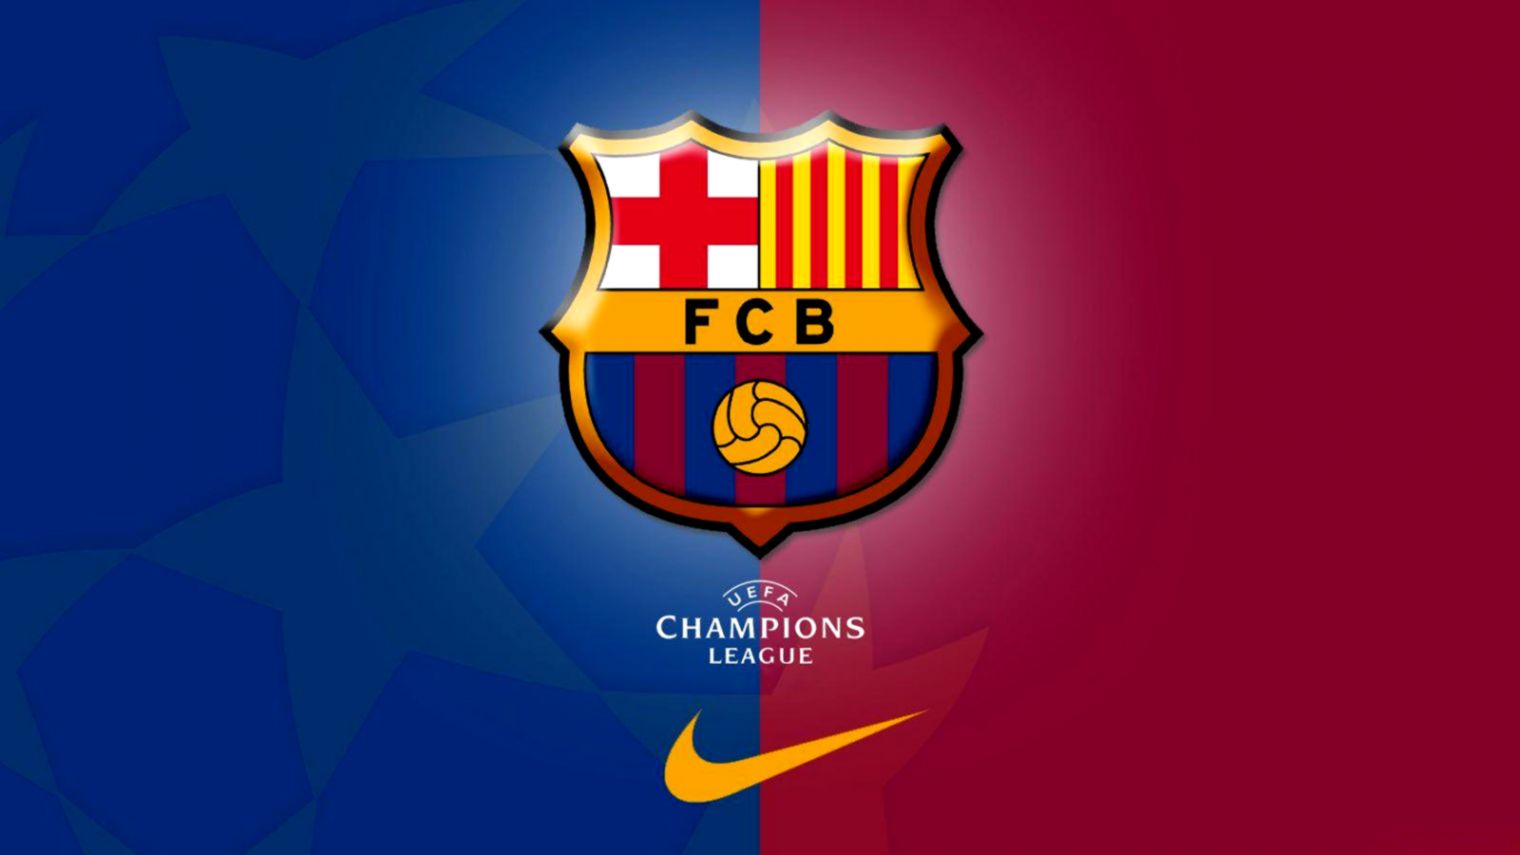 Fc Barcelona Logo Wallpapers Wallpaper Cave - Fc Barcelona Logo Wallpaper 2019 - HD Wallpaper 